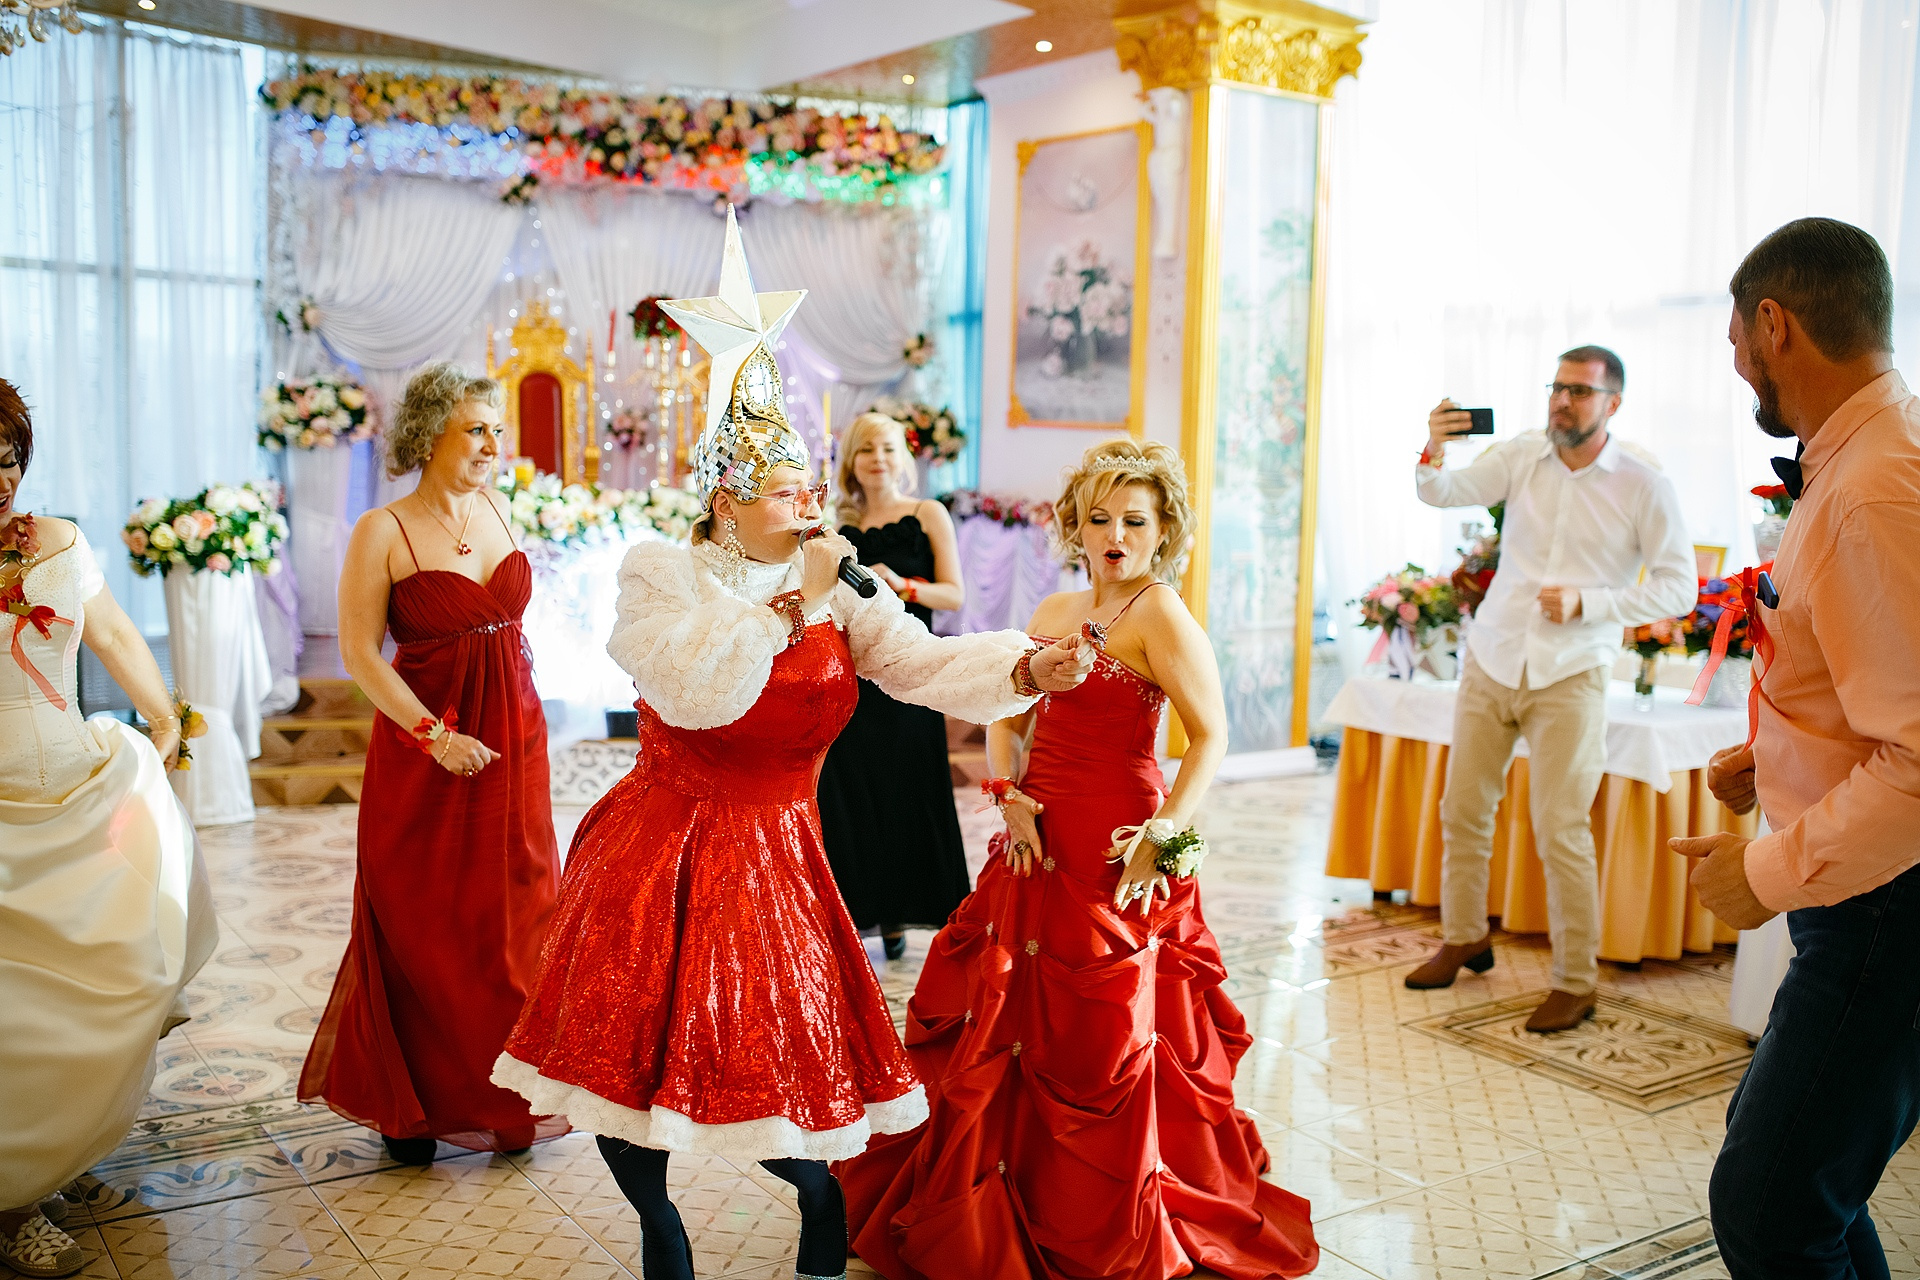 Шоу программа на свадьбу. Тамада Санкт Петербург. Поющая ведущая на свадьбу тамада СПБ. Как провести свадьбу без тамады